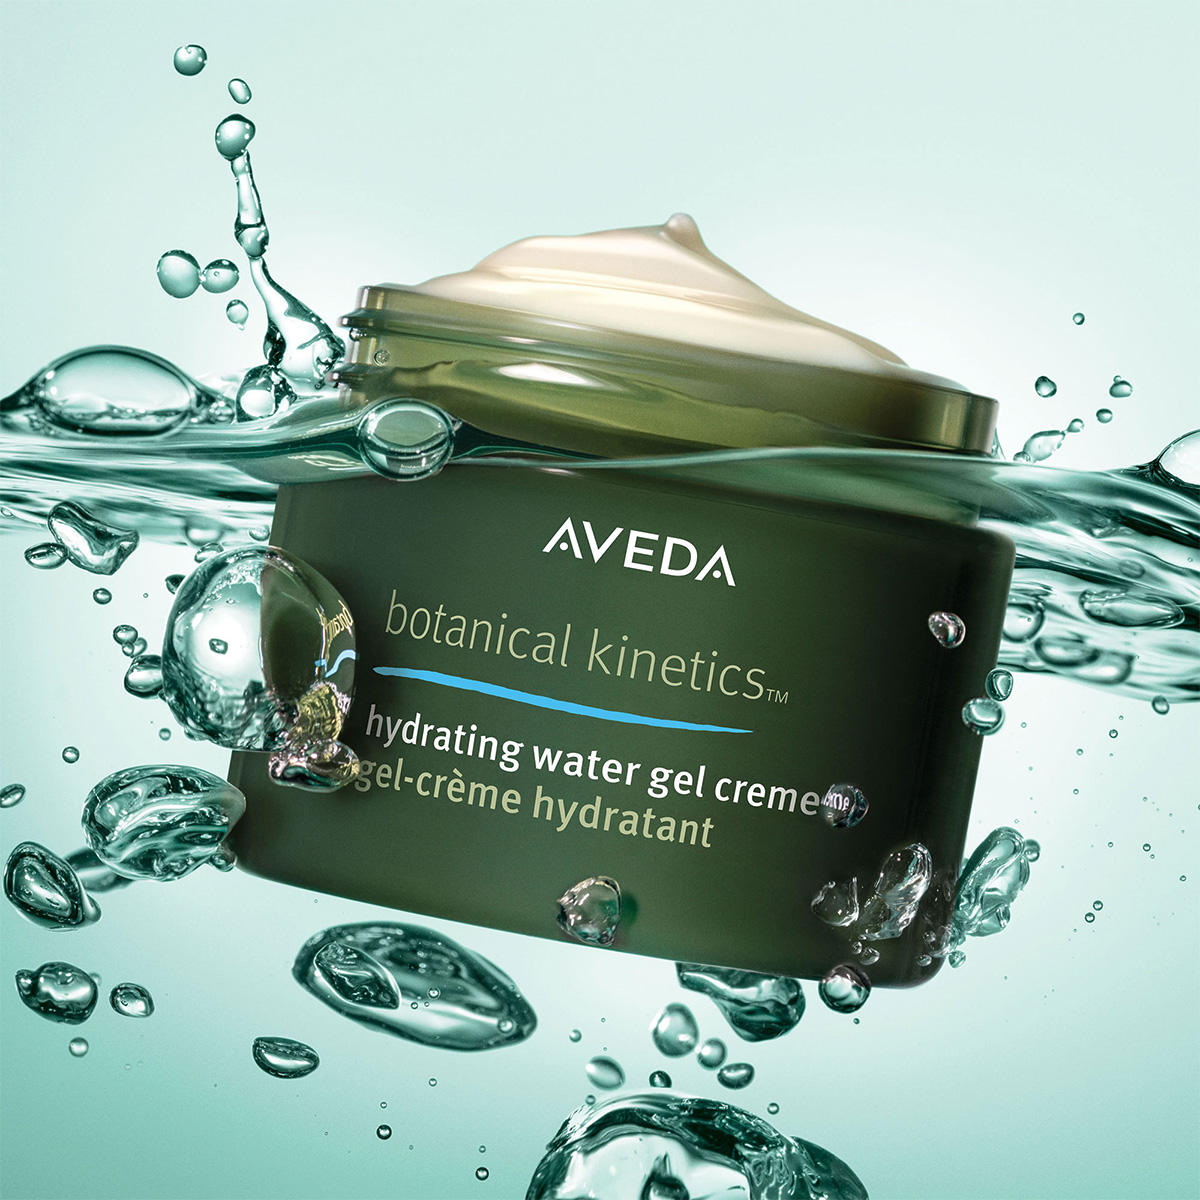 AVEDA Botanical Kinetics Hydrating Water Gel Creme 50 ml - 2